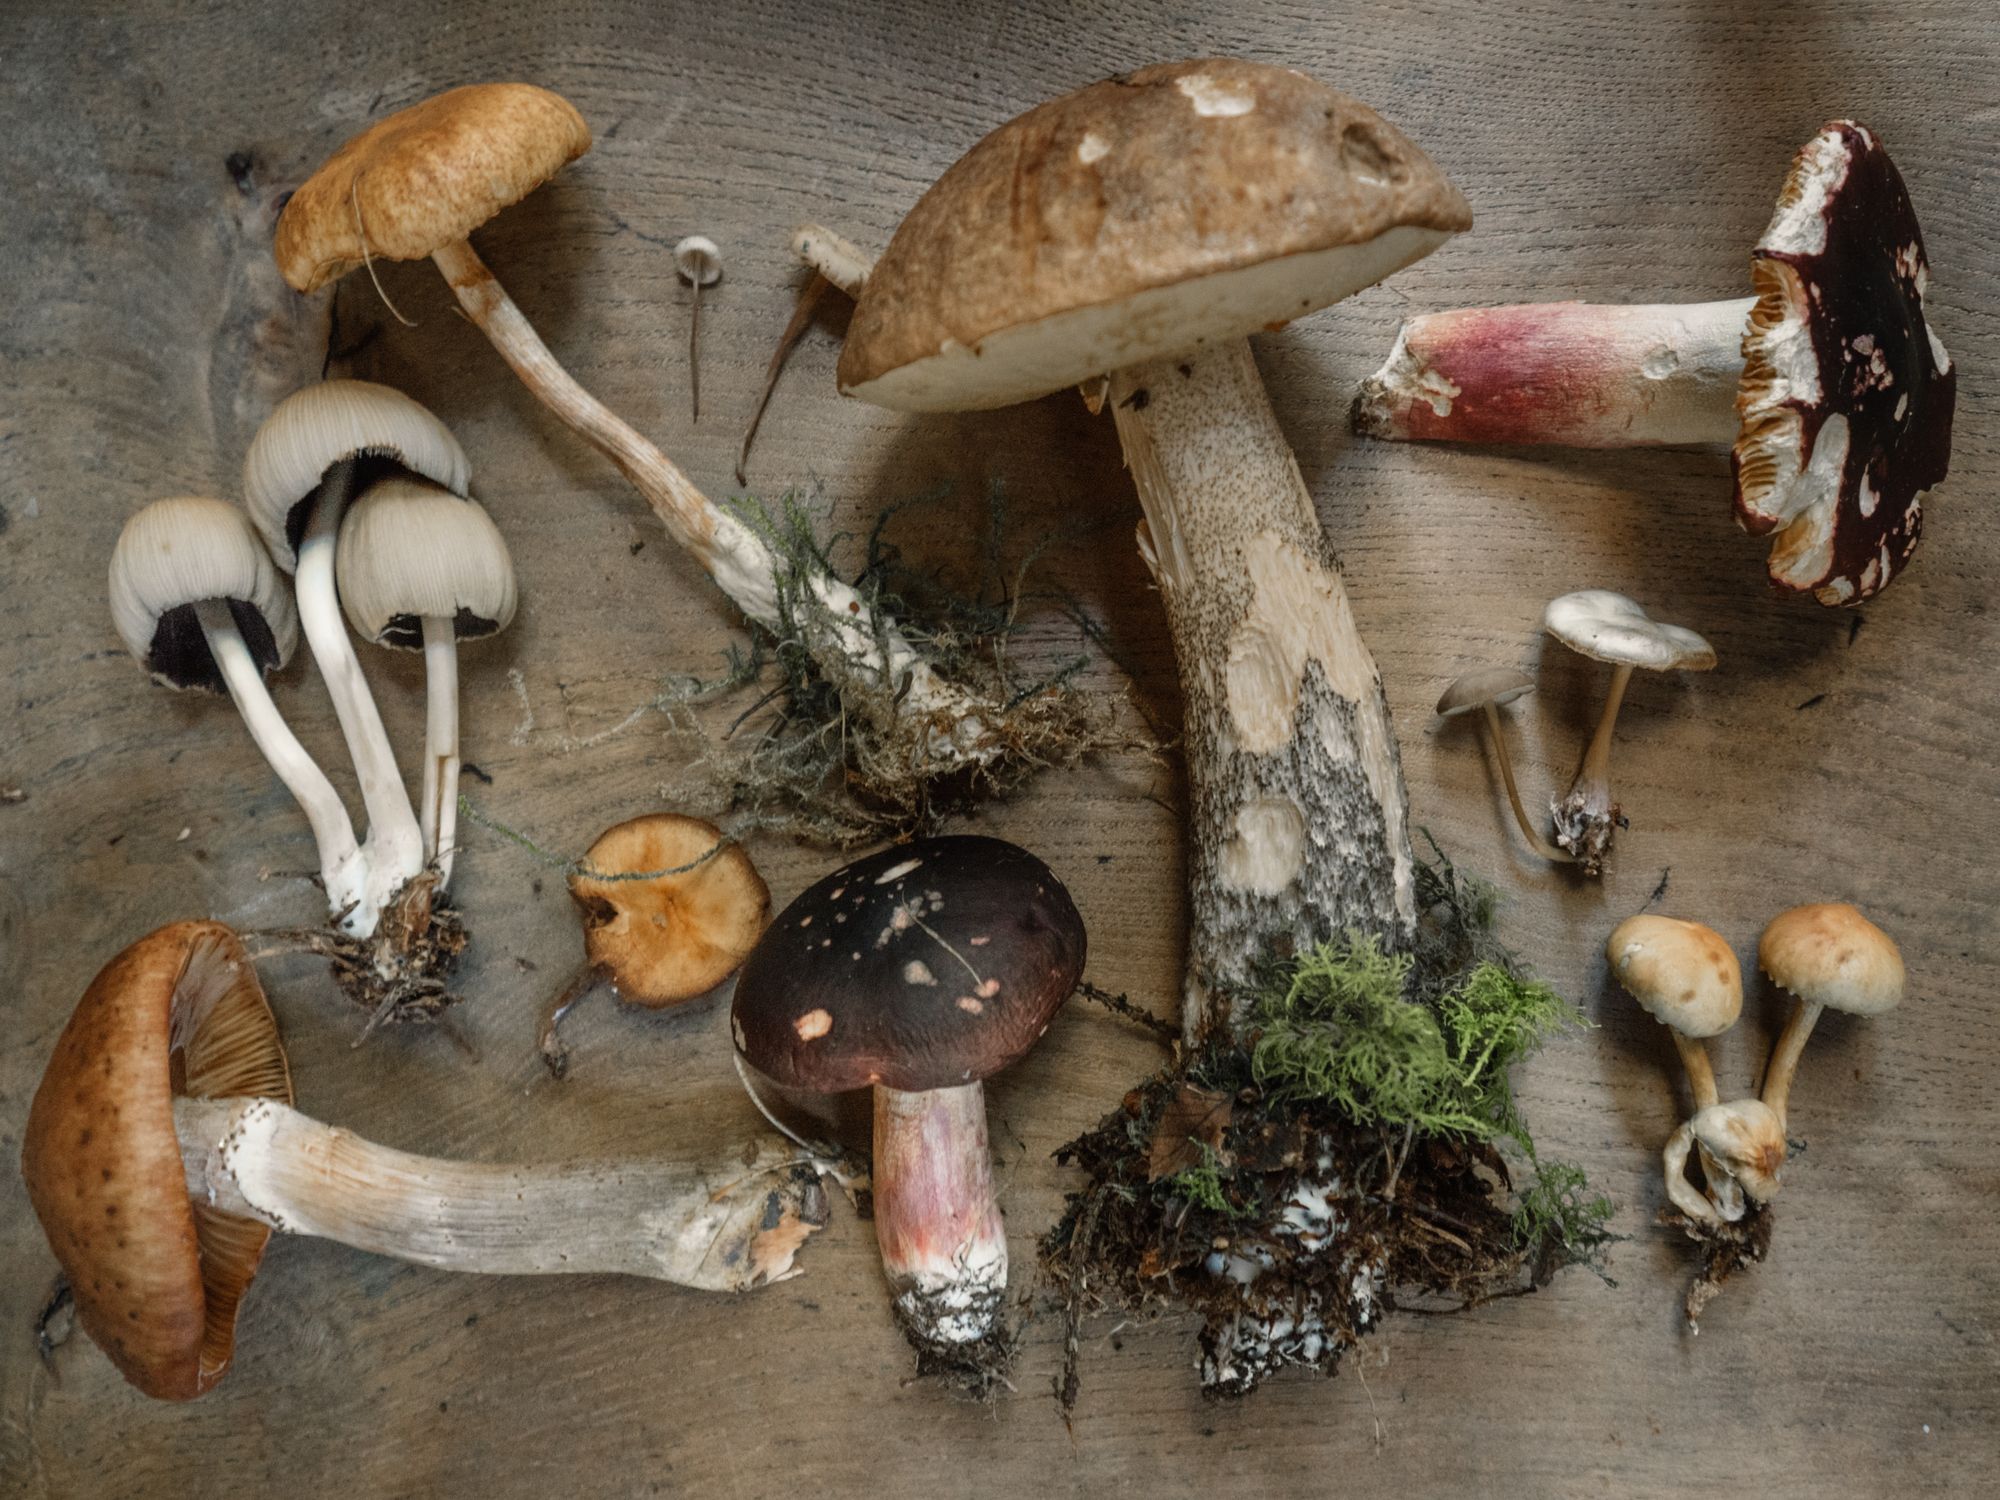 variety of mushrooms on table